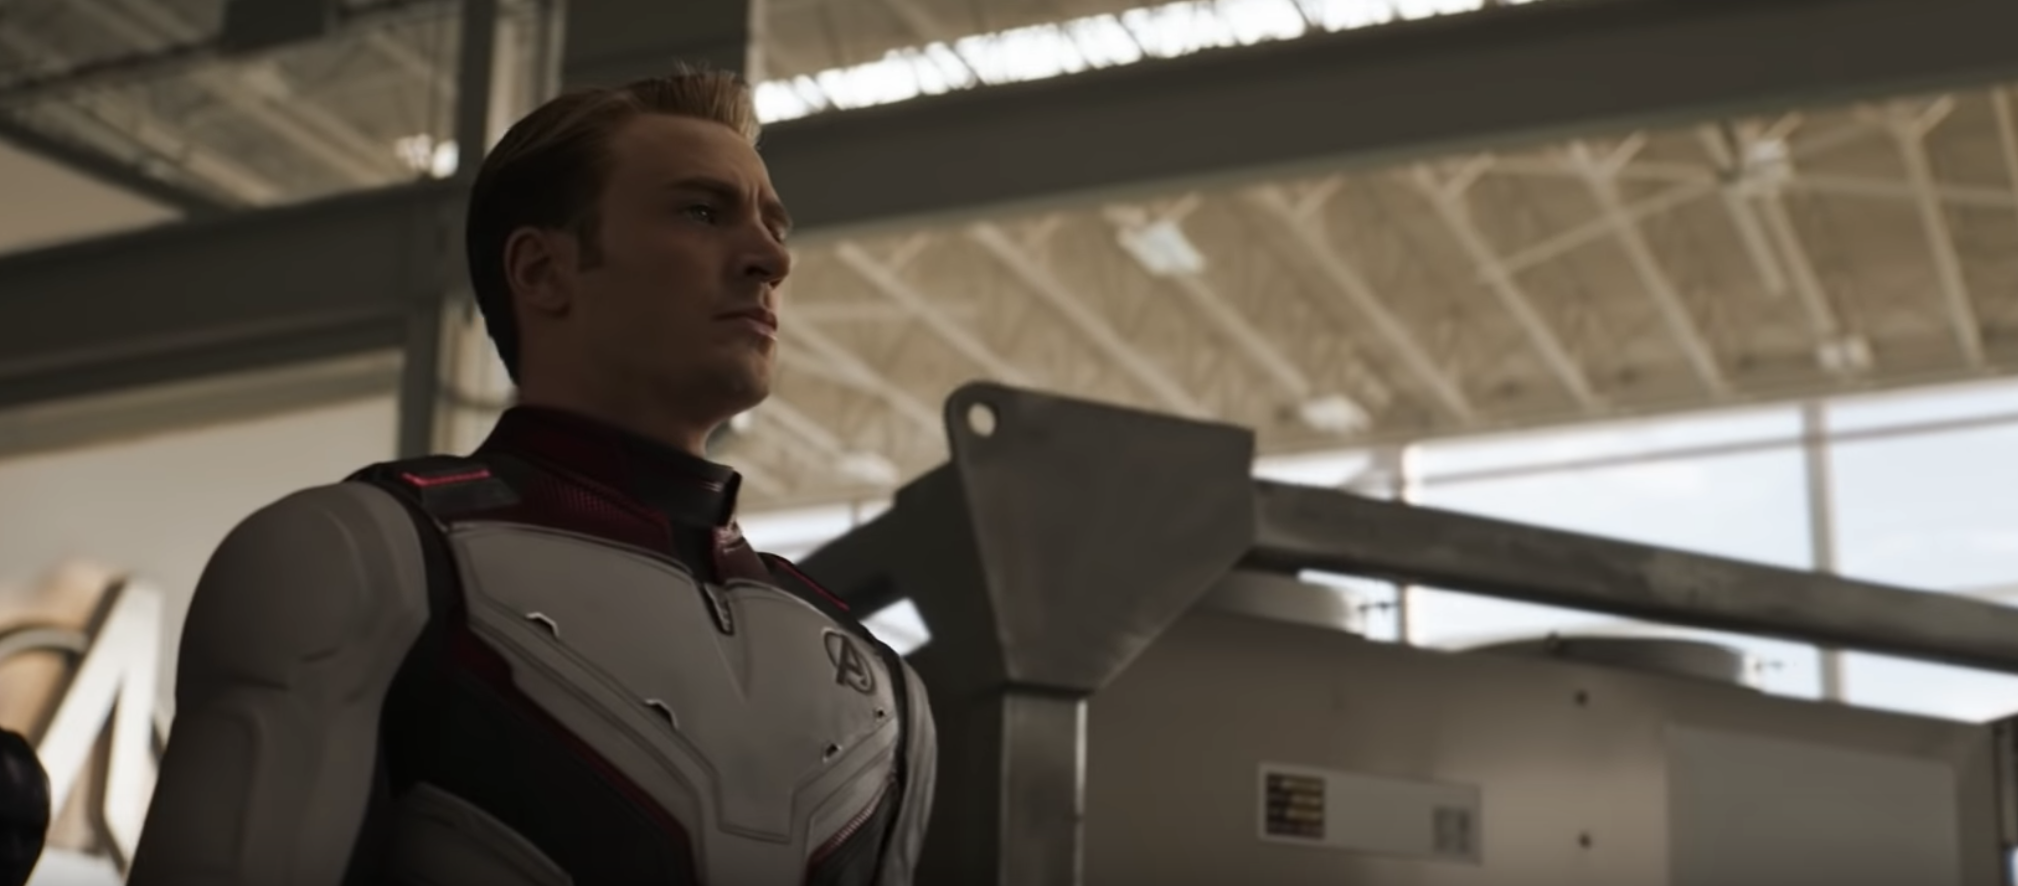 Avengers: Endgame trailer reveals brand new Avengers suits